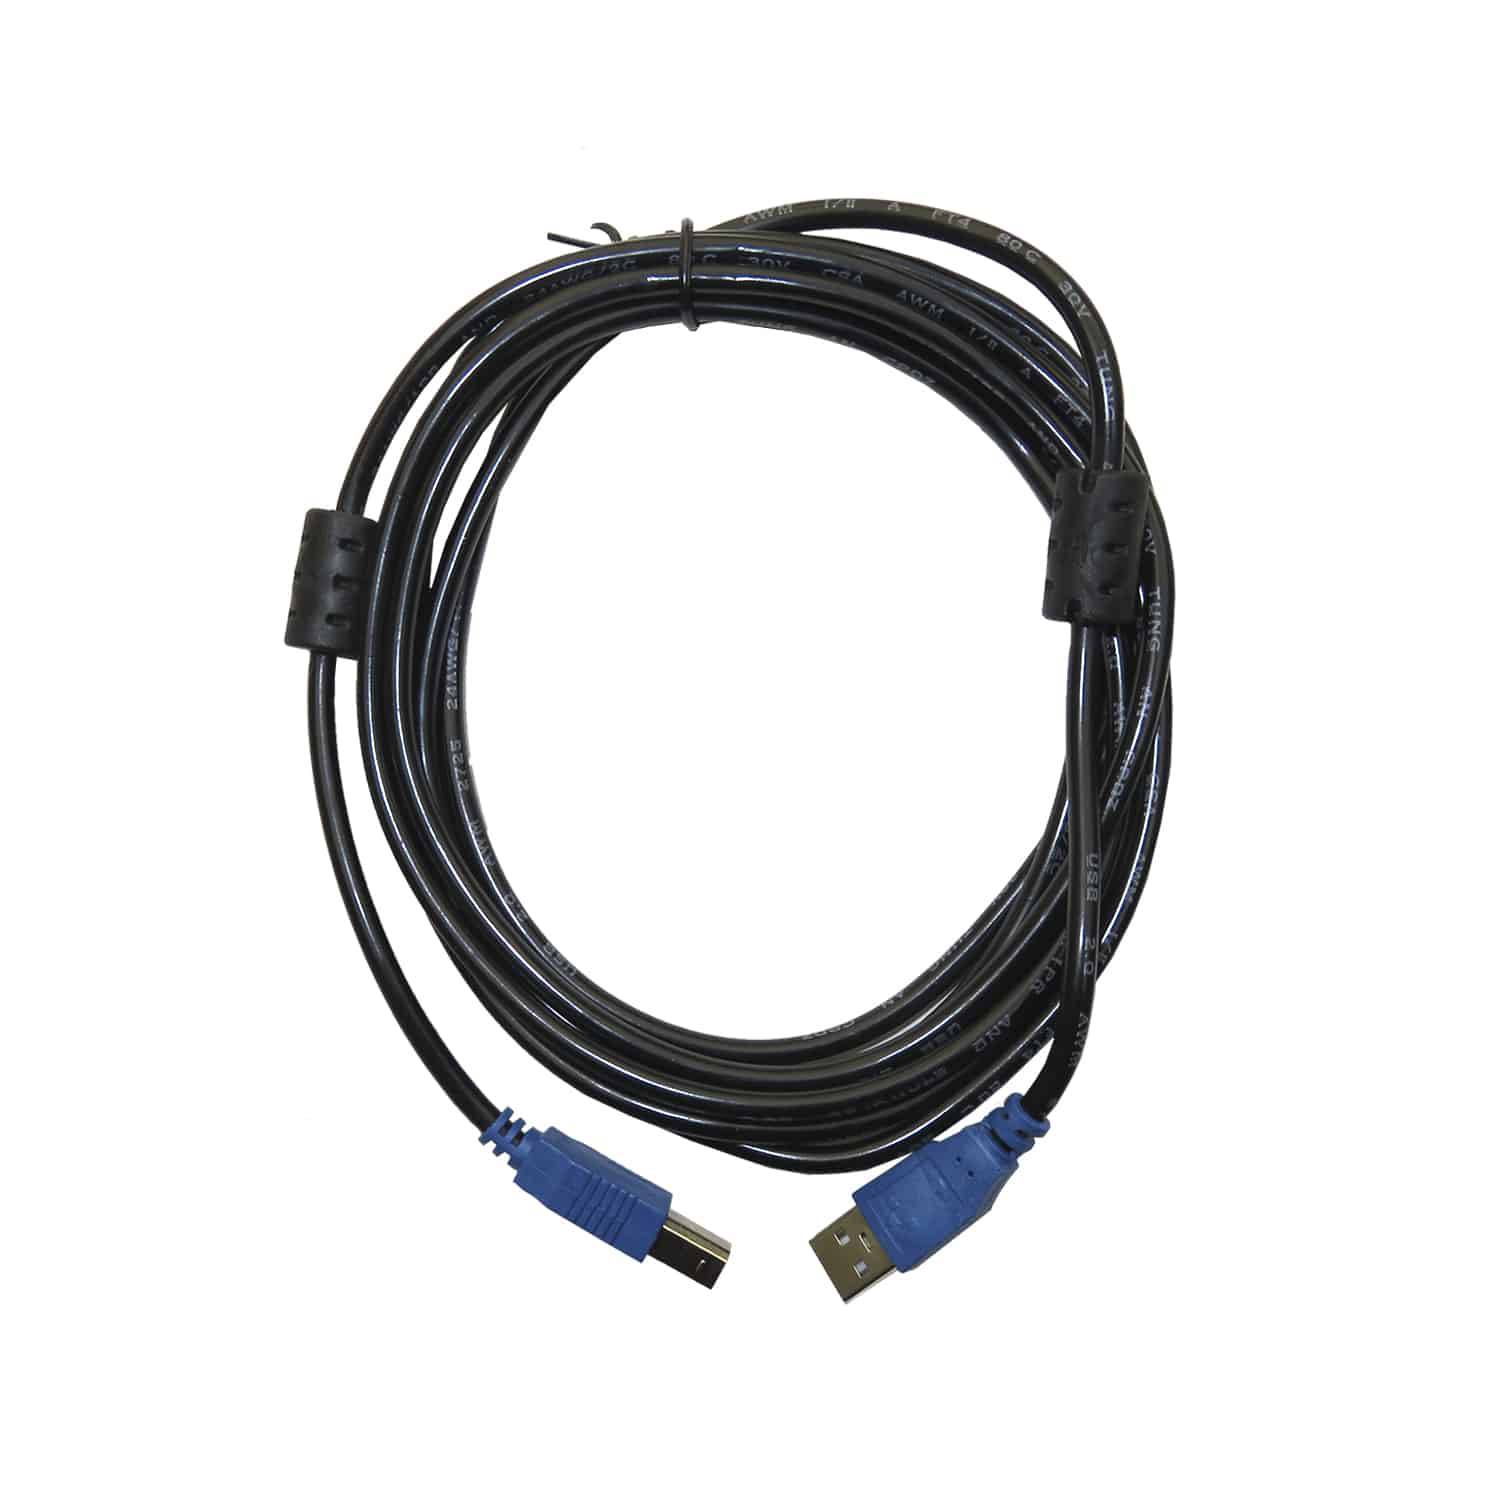 Cable USB A/B para impresora 3 metros Argom, Material de Cobre